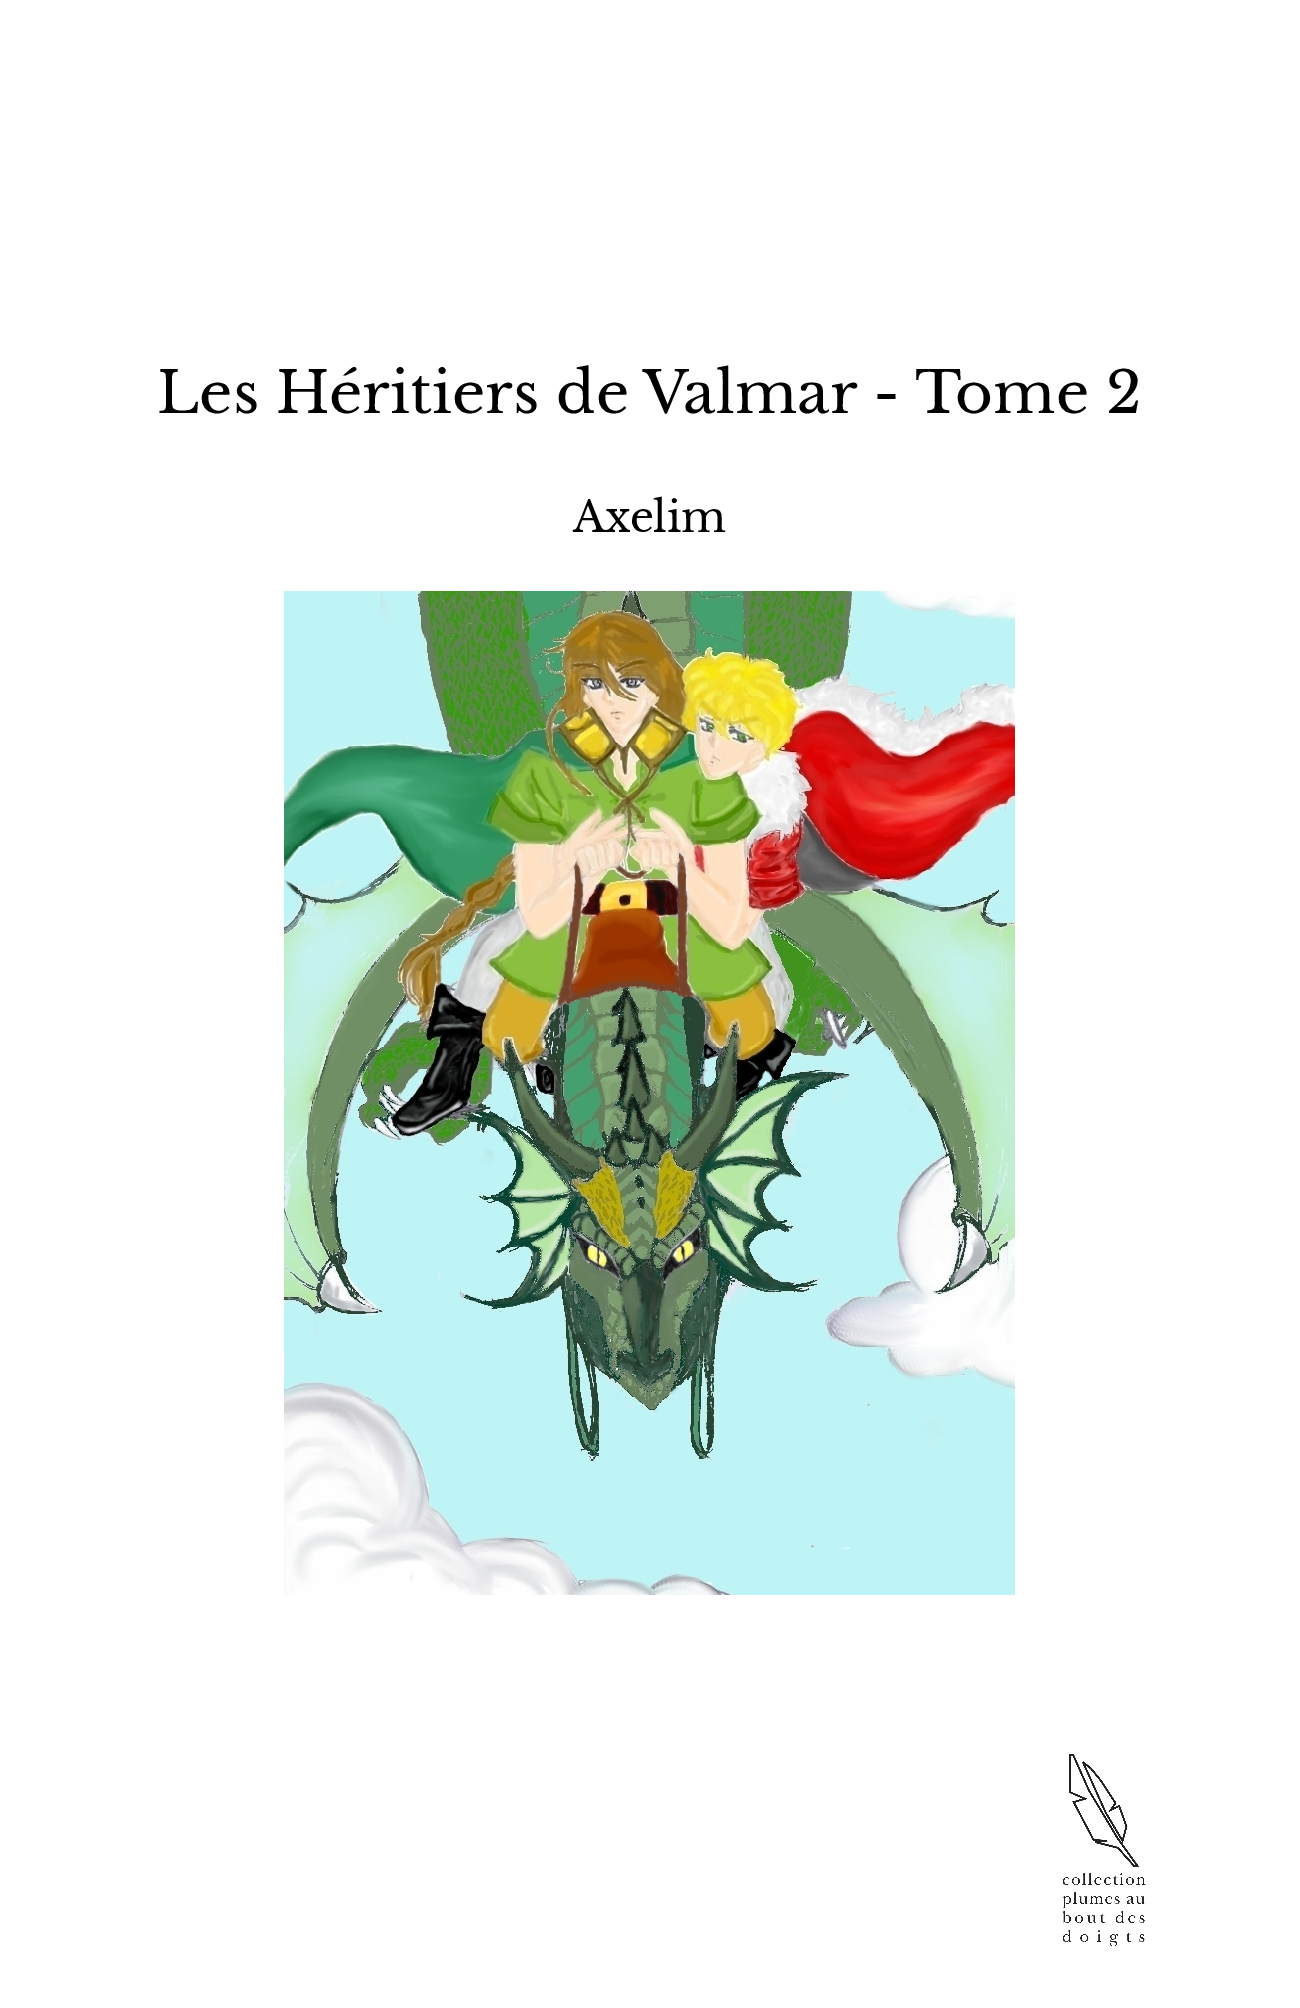 Les Héritiers de Valmar - Tome 2